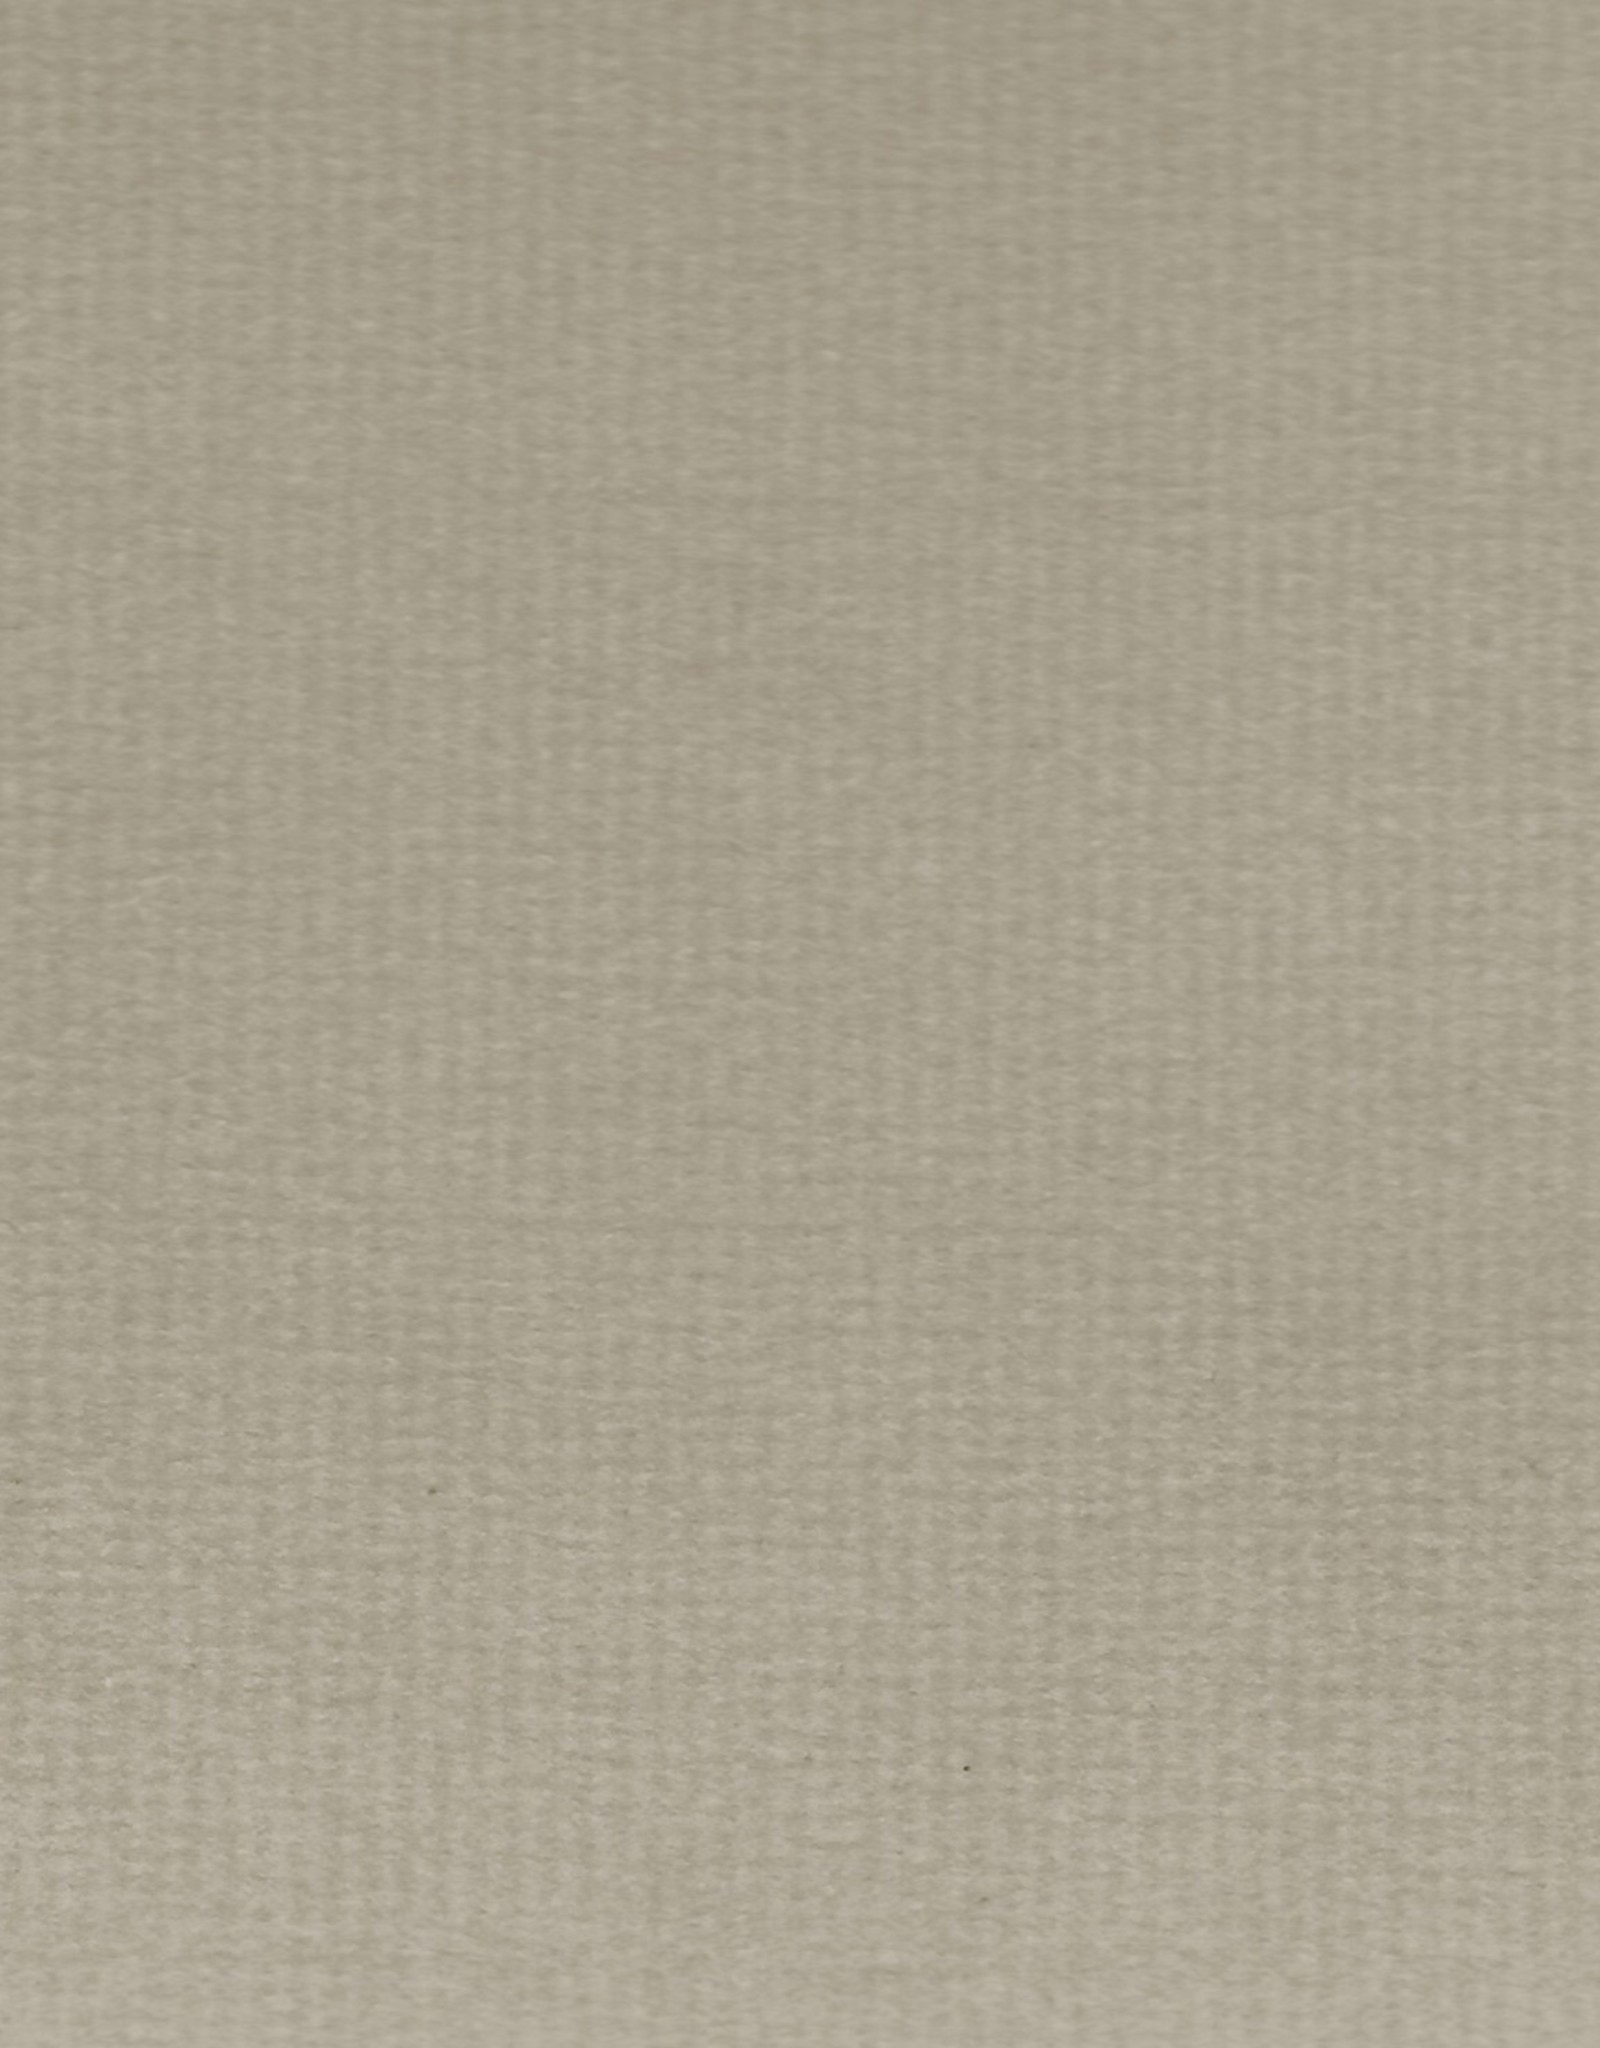 Hahnemuhle Ingres Antique, #110 Smoke, 18.75" x 24.75", 100gsm